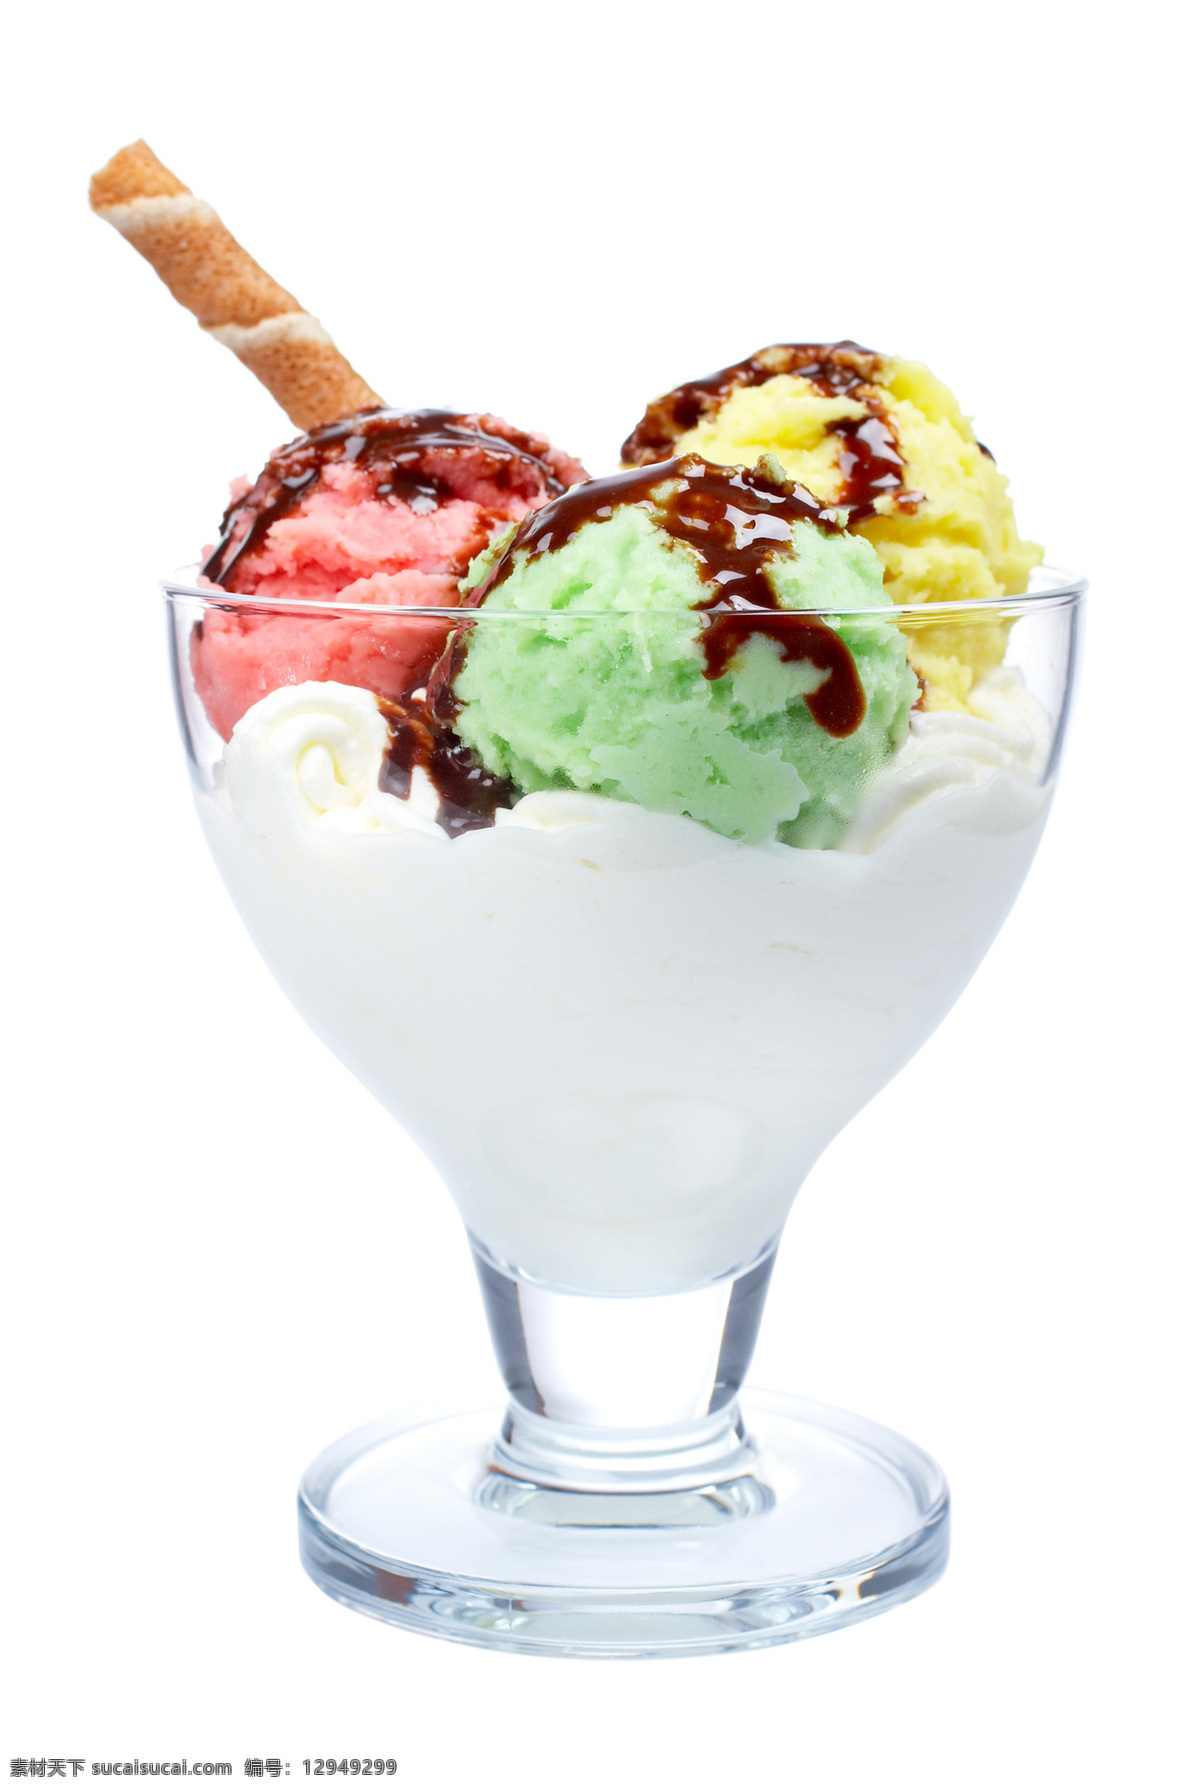 巧克力 牛奶 冰淇淋 巧克力冰淇淋 冰激凌 奶油 夏日食品 食品 餐饮 美食 摄影图 高清图片 酒类图片 餐饮美食